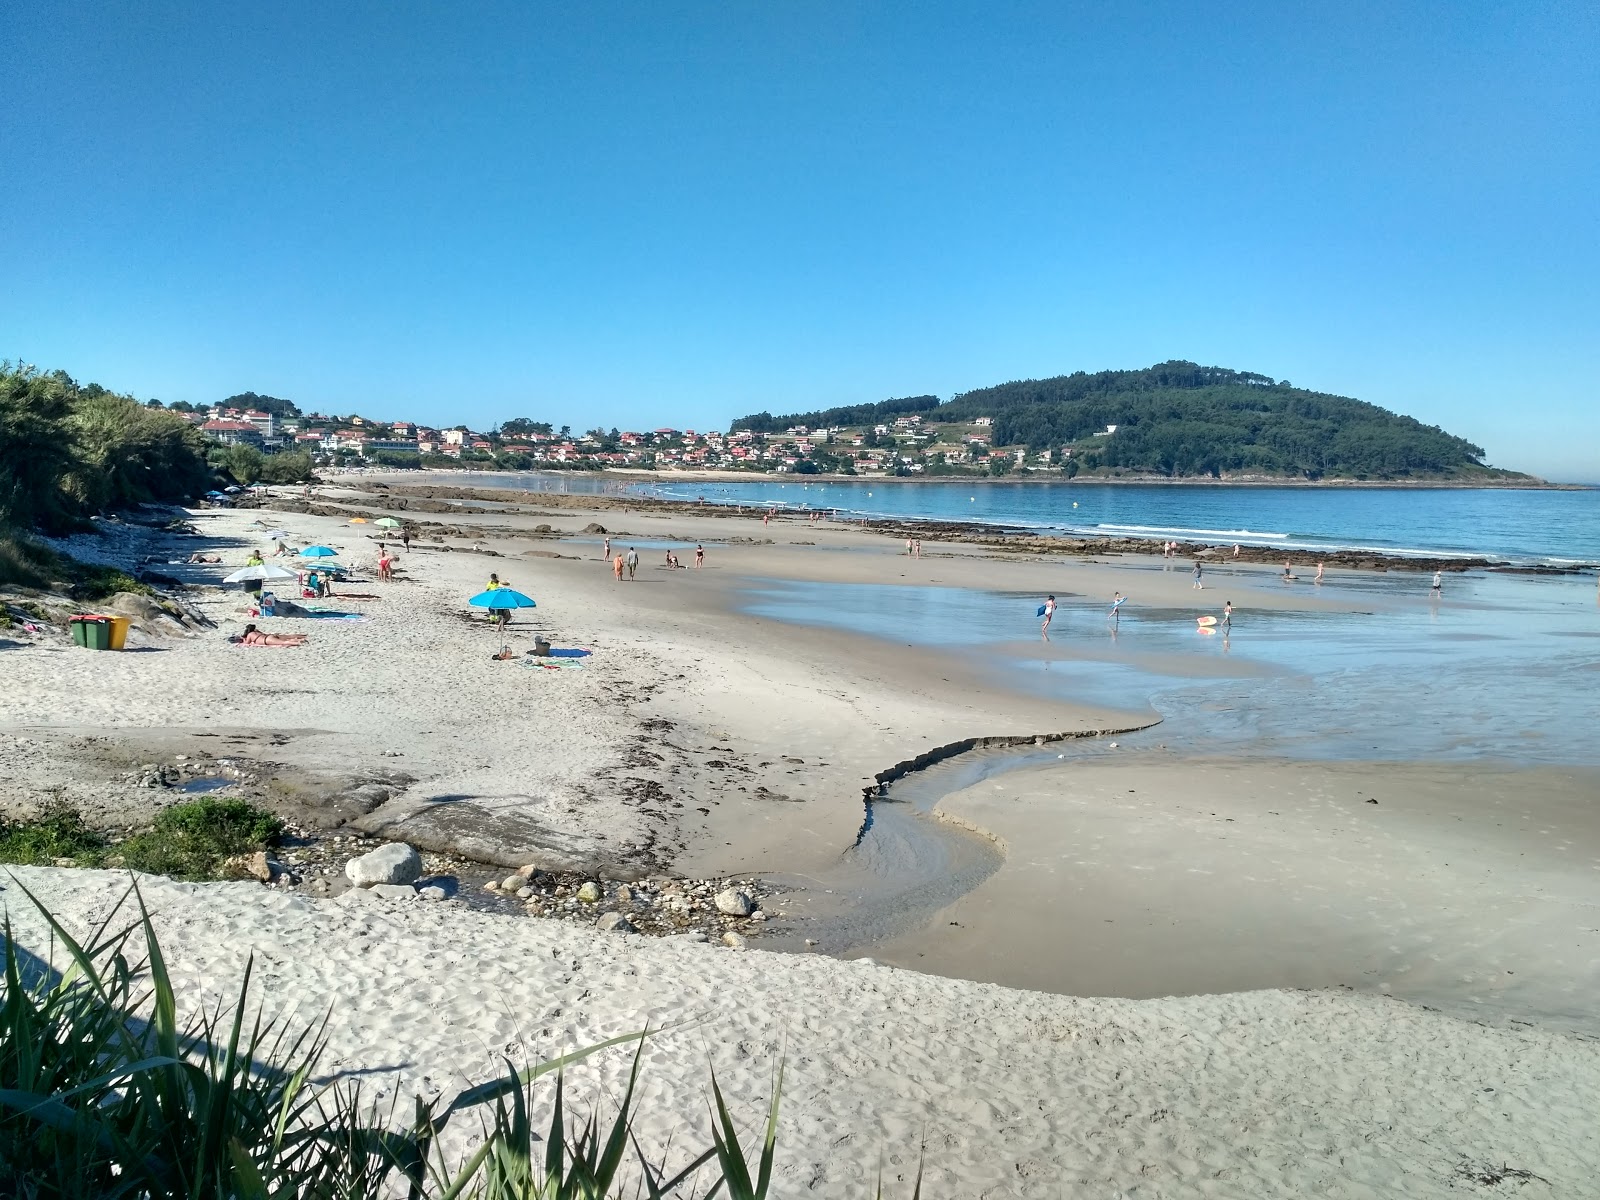 Fotografie cu Praia de Patos cu o suprafață de nisip alb